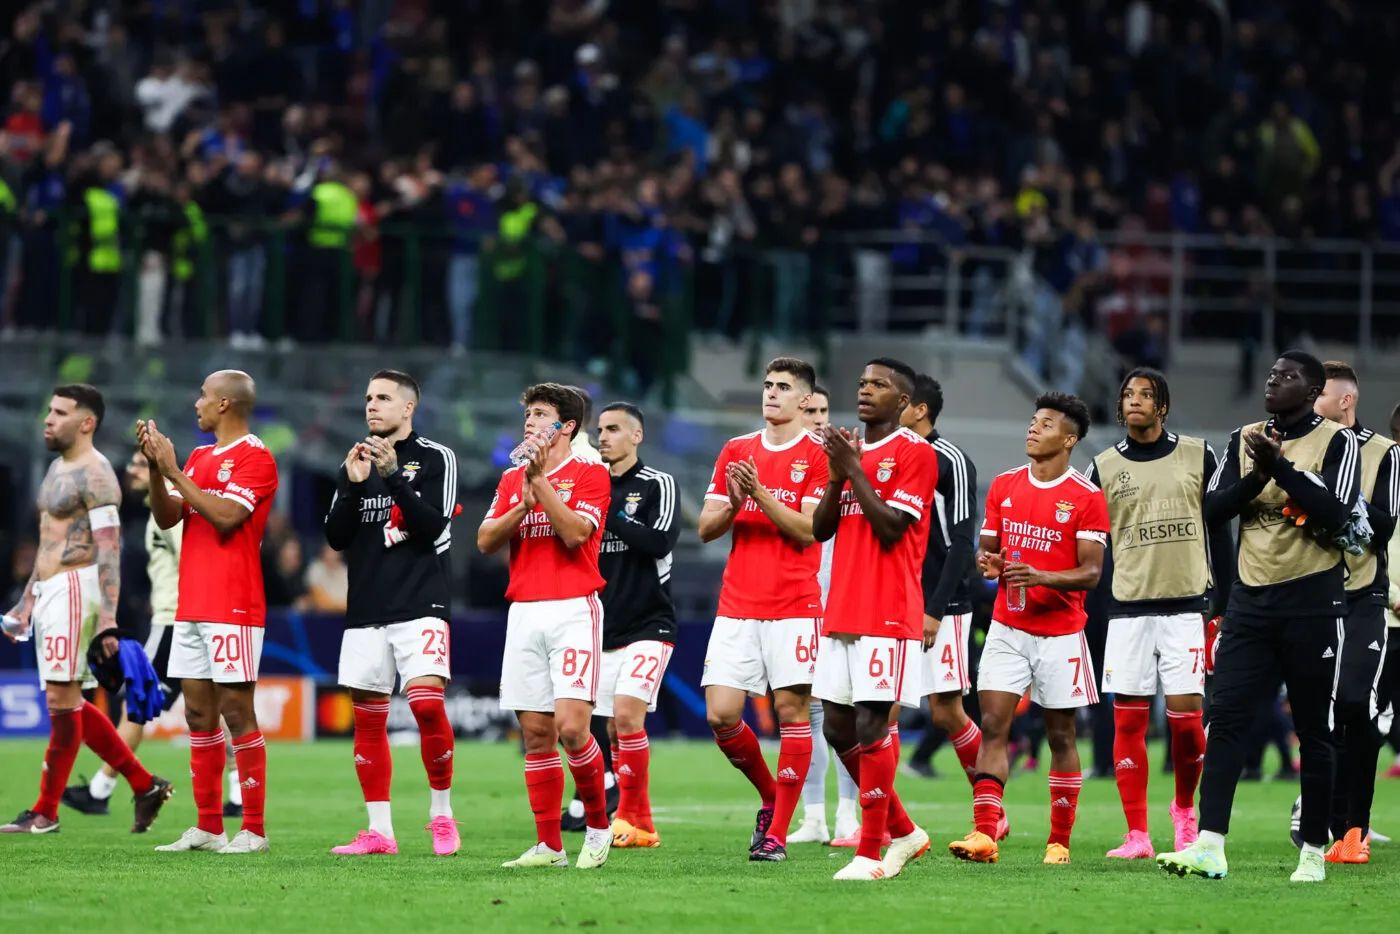 Benfica a envoyé une lettre à l'Inter pour s'excuser du comportement de certains supporters